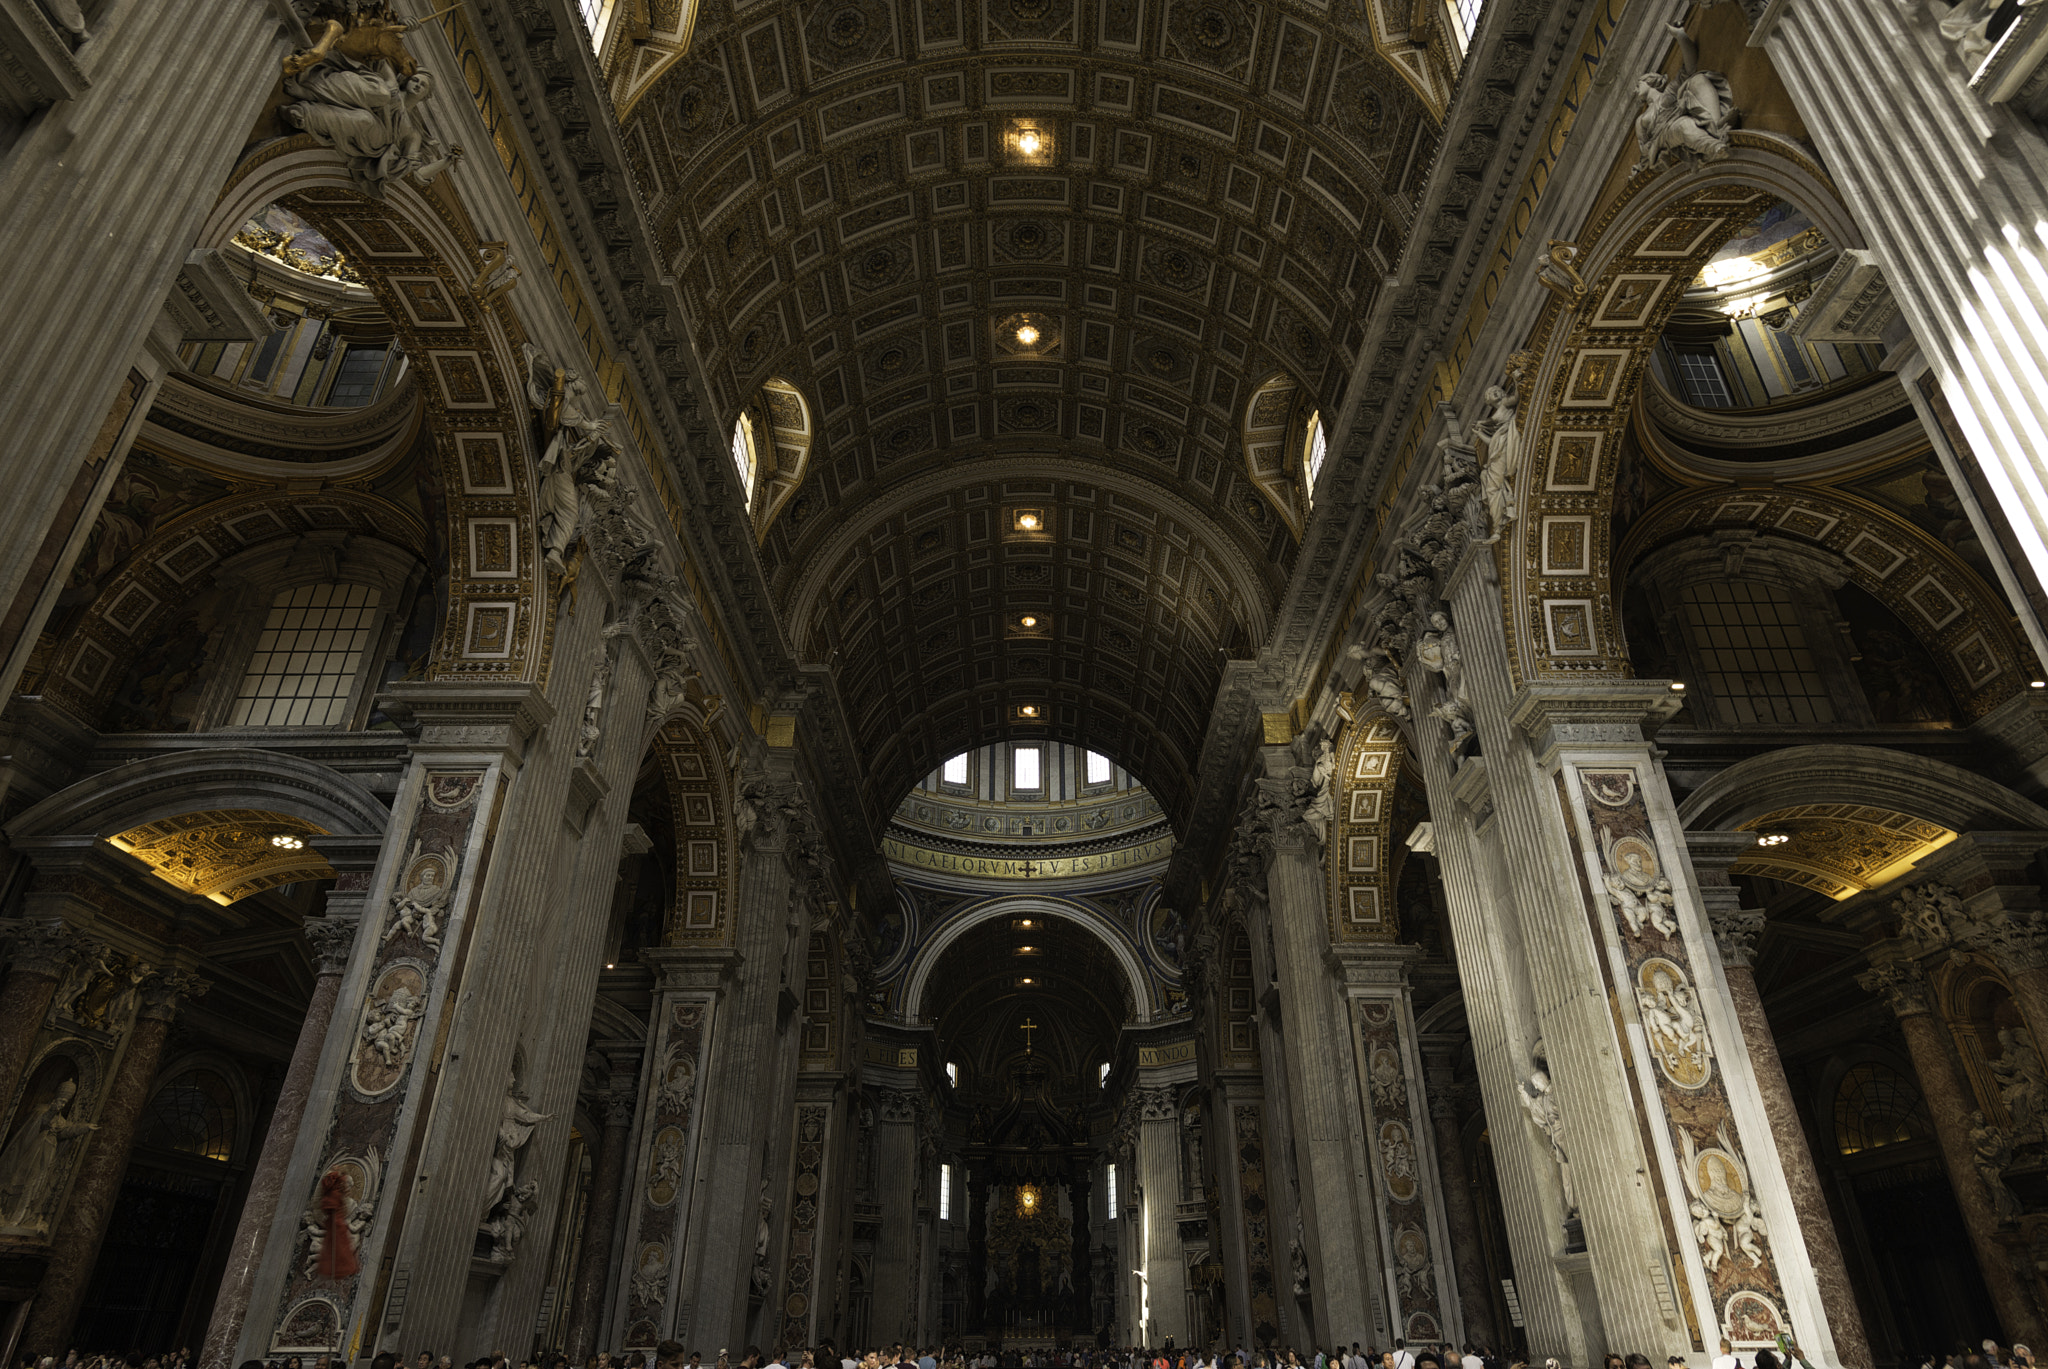 Nikon D610 sample photo. St. peter's basilica photography